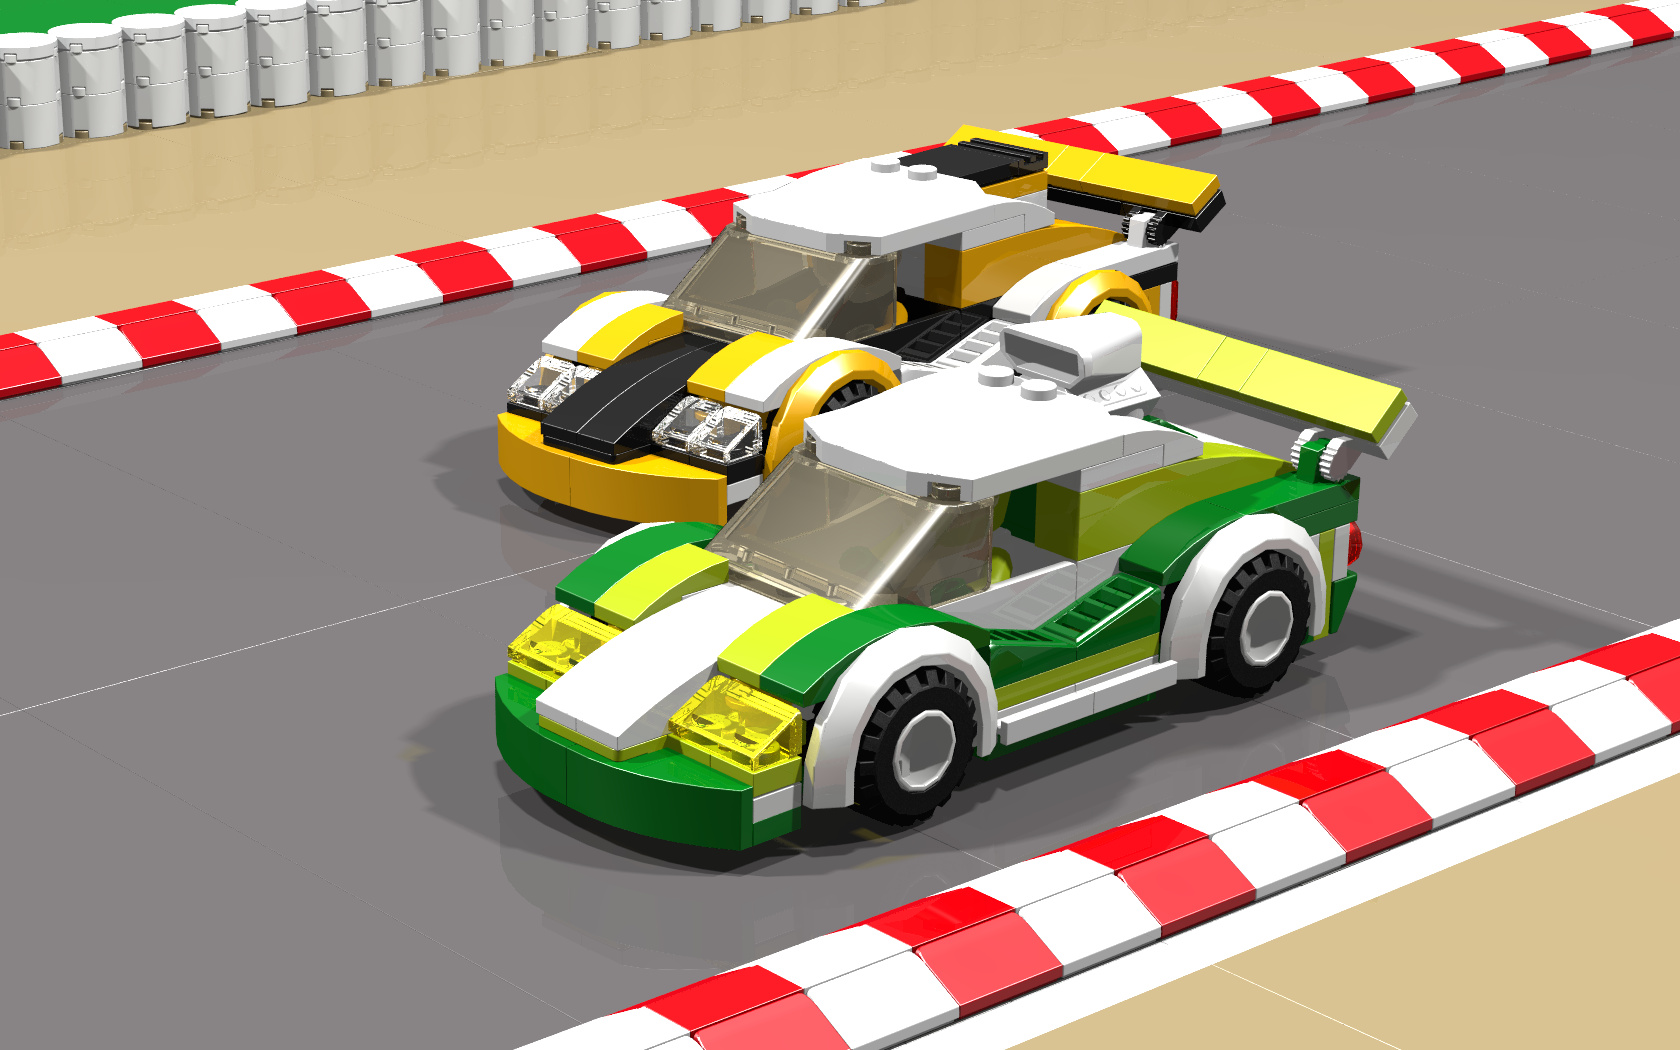 Слух: новая гоночная видеоигра по LEGO будет называться LEGO 2K Drive